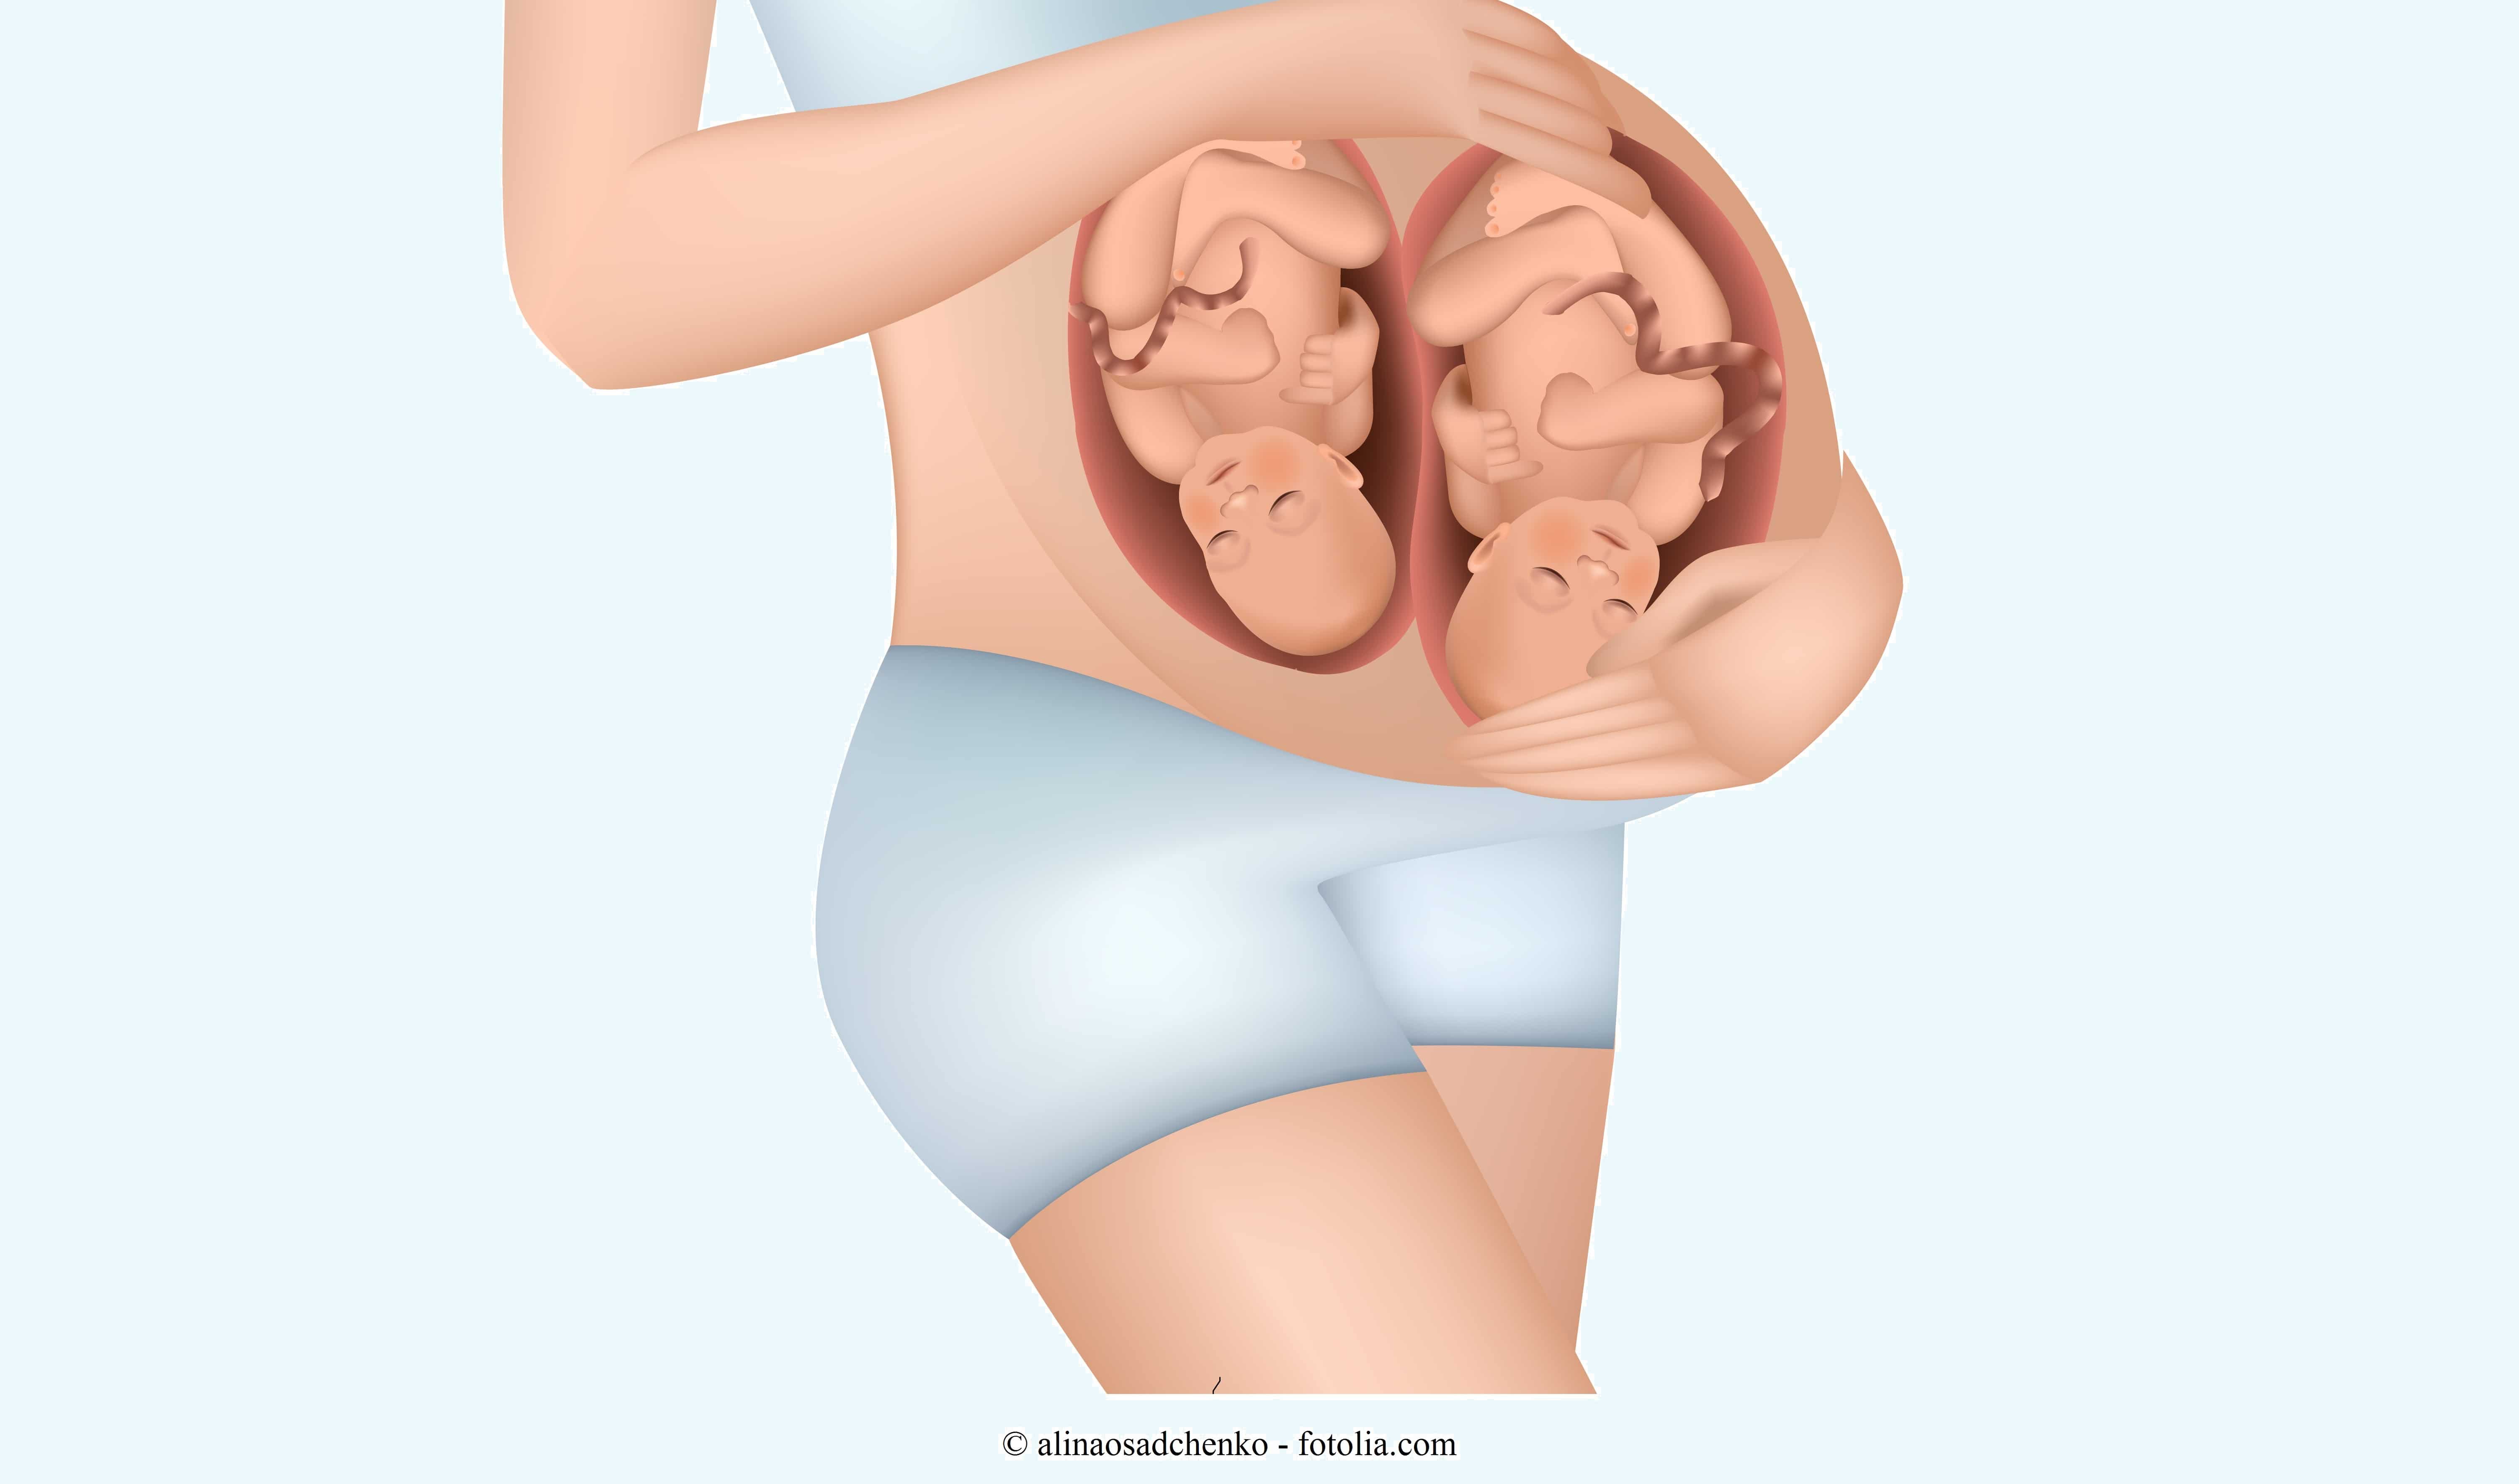 Schwangerschaftssymptome in den ersten Wochen